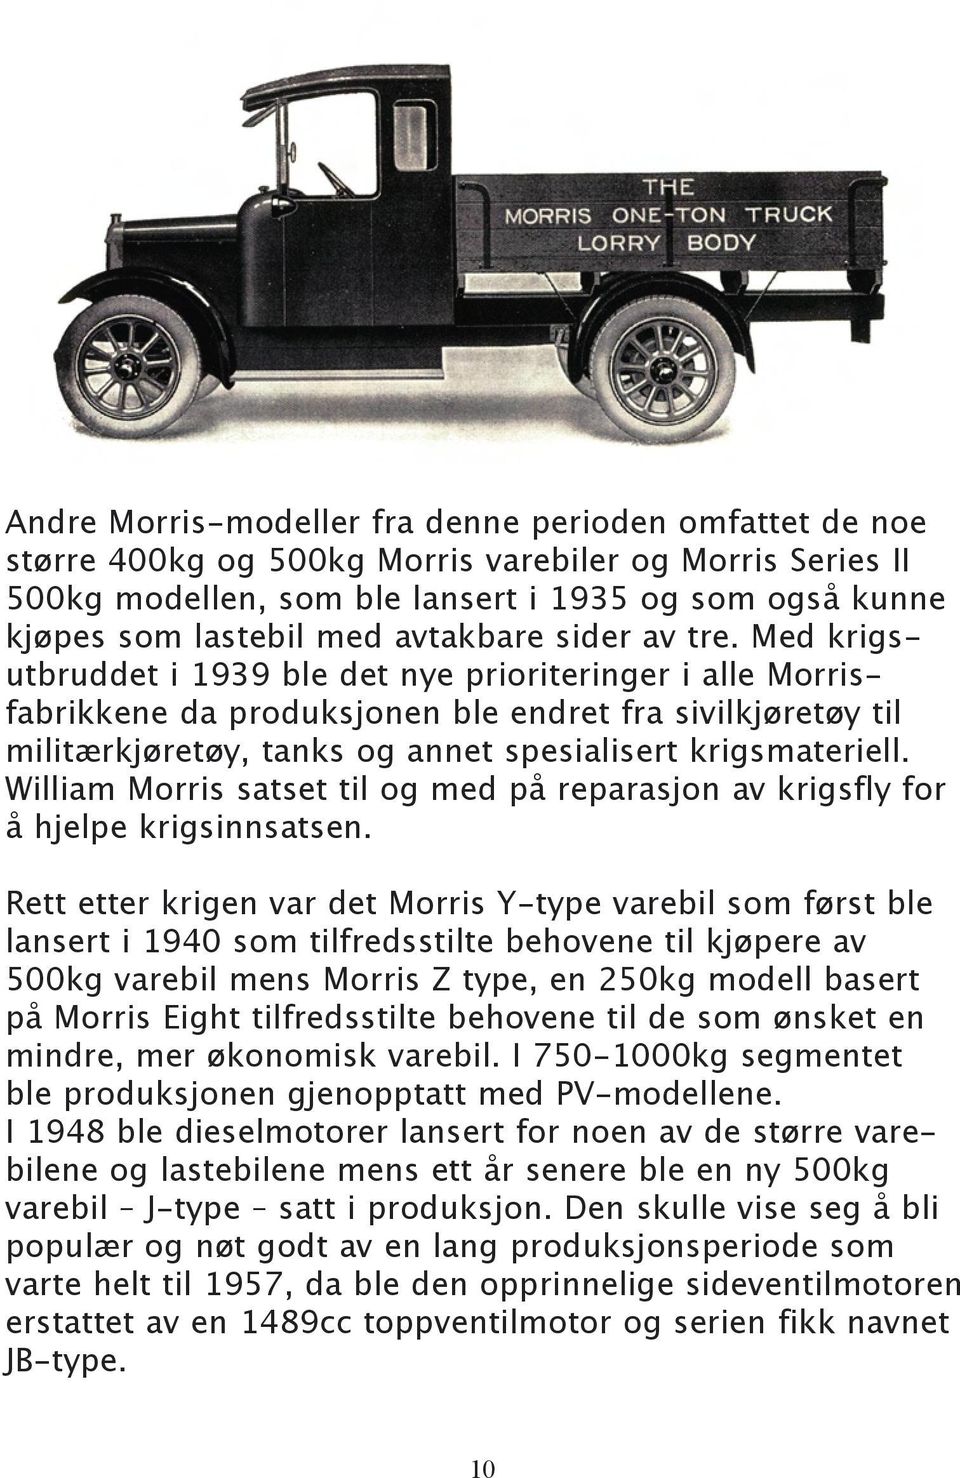 Med krigsutbruddet i 1939 ble det nye prioriteringer i alle Morrisfabrikkene da produksjonen ble endret fra sivilkjøretøy til militærkjøretøy, tanks og annet spesialisert krigsmateriell.